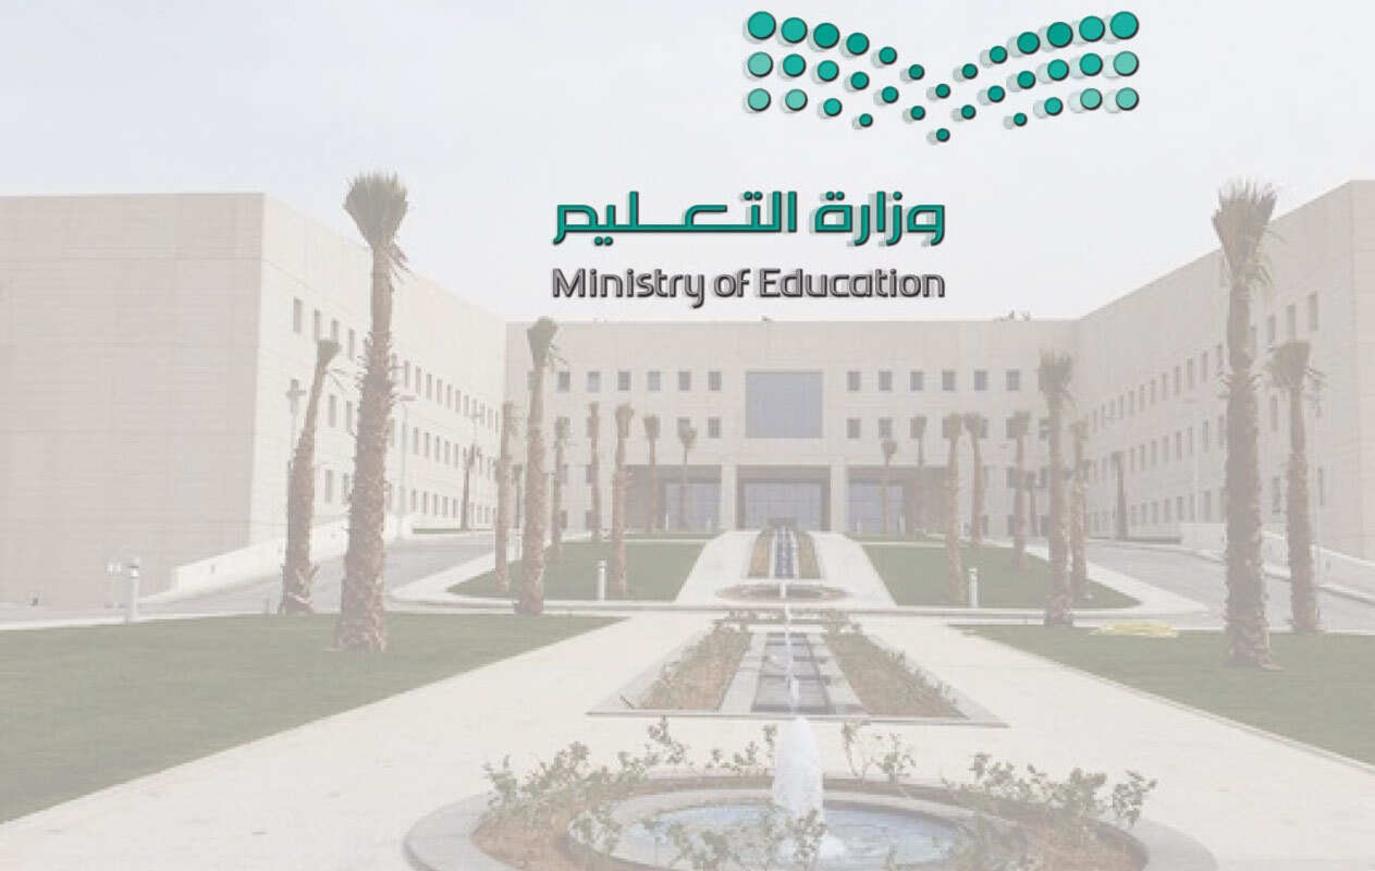 هام وزارة التعليم السعودي يعلن موعد بداية الاختبارات النهائية ١٤٤٣ الترم الثالث لجميع المراحل الدراسية؟؟